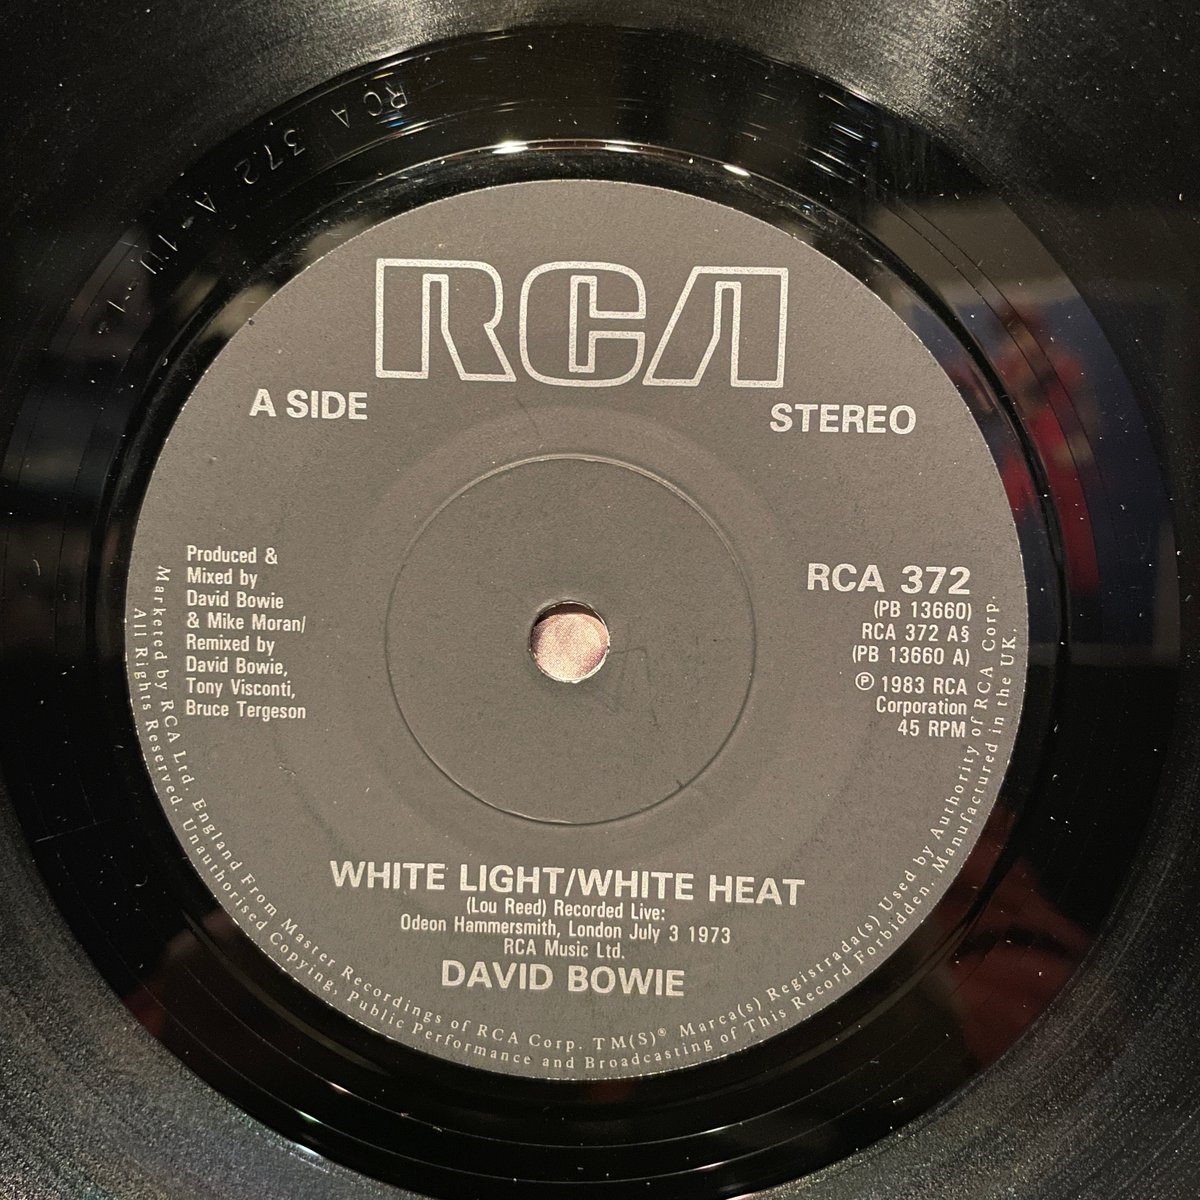 ほな7いこか
DAVID BOWIE / White Light/White Heat [’83 RCA --- RCA 372]　　　
#DavidBowie  #WhiteLightWhiteHeat  #KenScott  #TonyVisconti  #HammersmithOdeon  #vinylbar  #recordbar  #レコードバー  #mhc09012023
youtube.com/watch?v=GeqGnX…